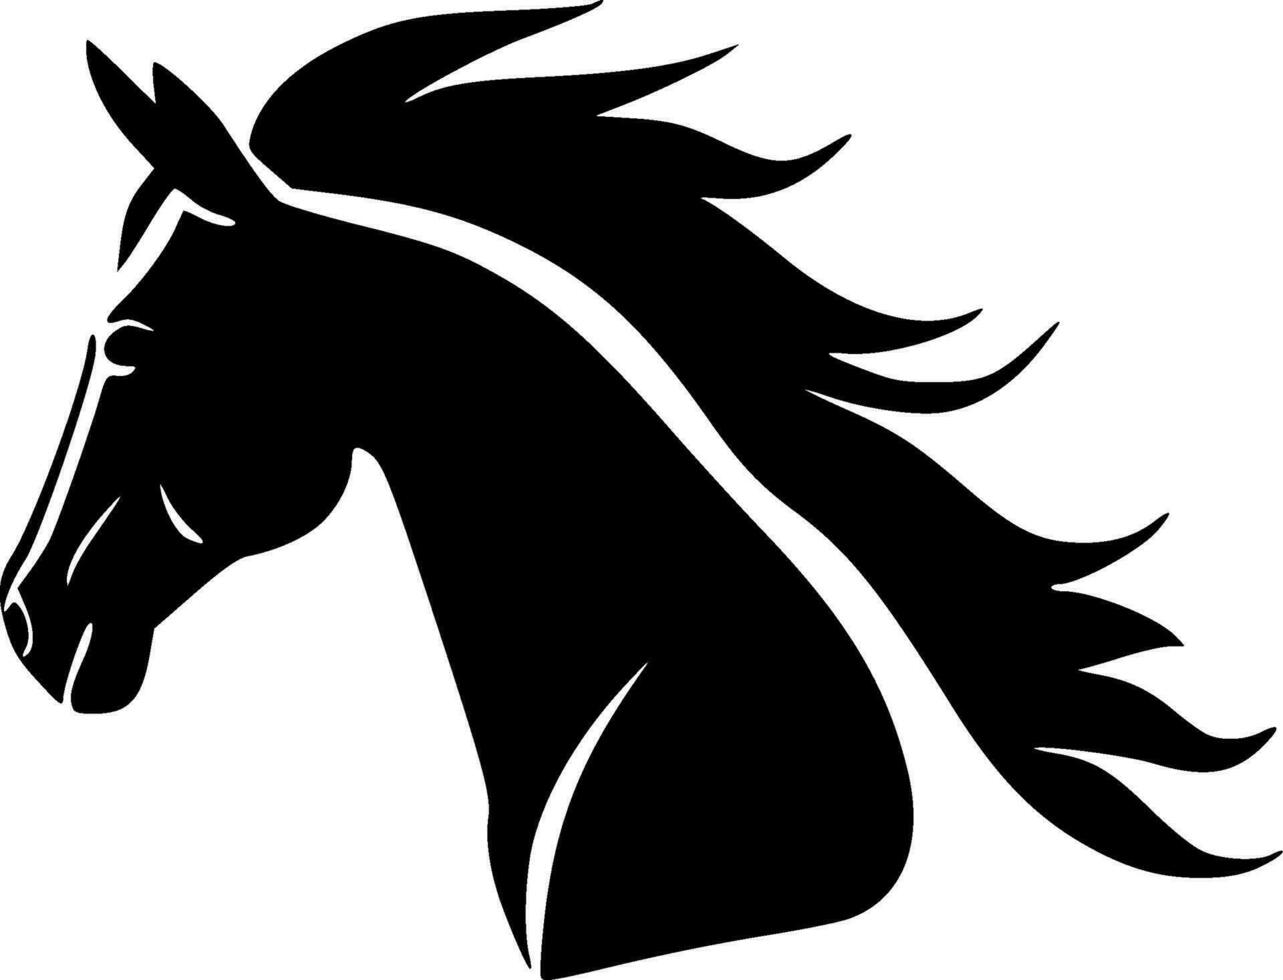 Pferd - - hoch Qualität Vektor Logo - - Vektor Illustration Ideal zum T-Shirt Grafik